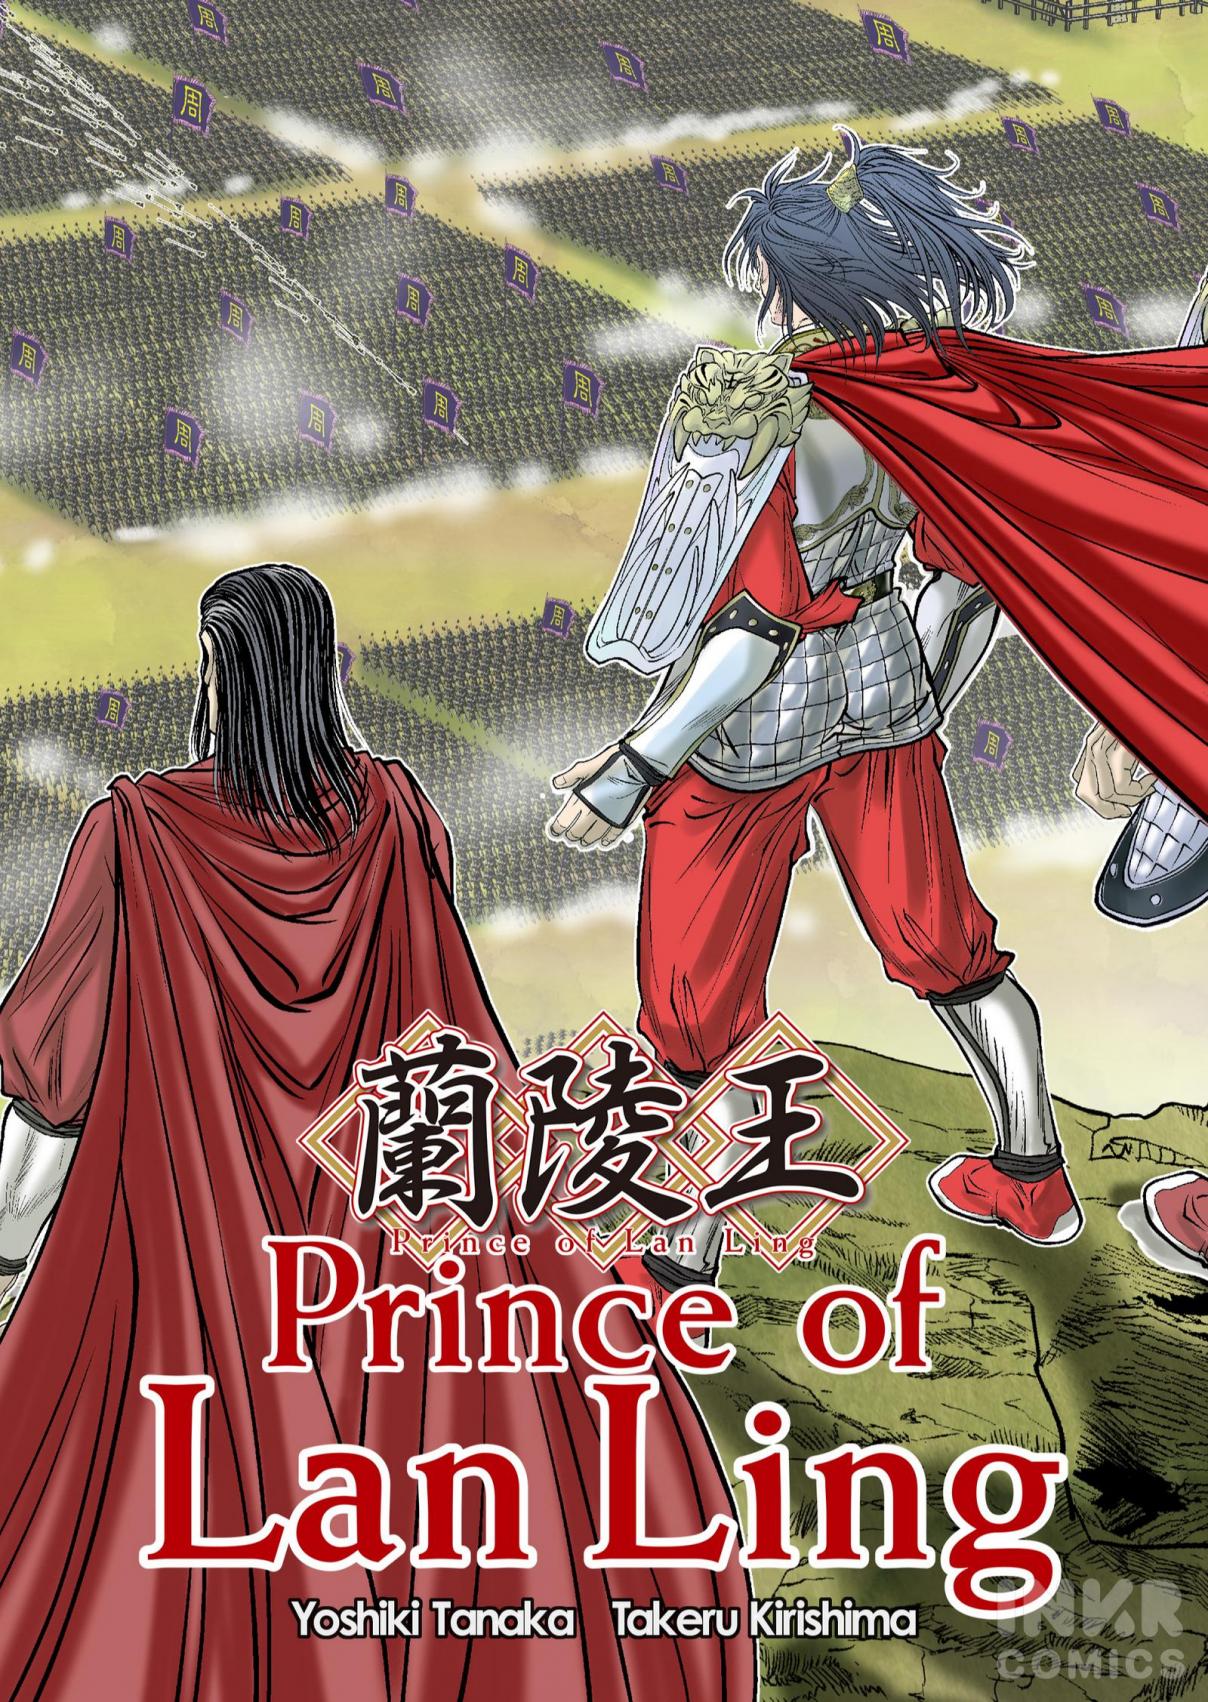 Prince of Lan Ling 3